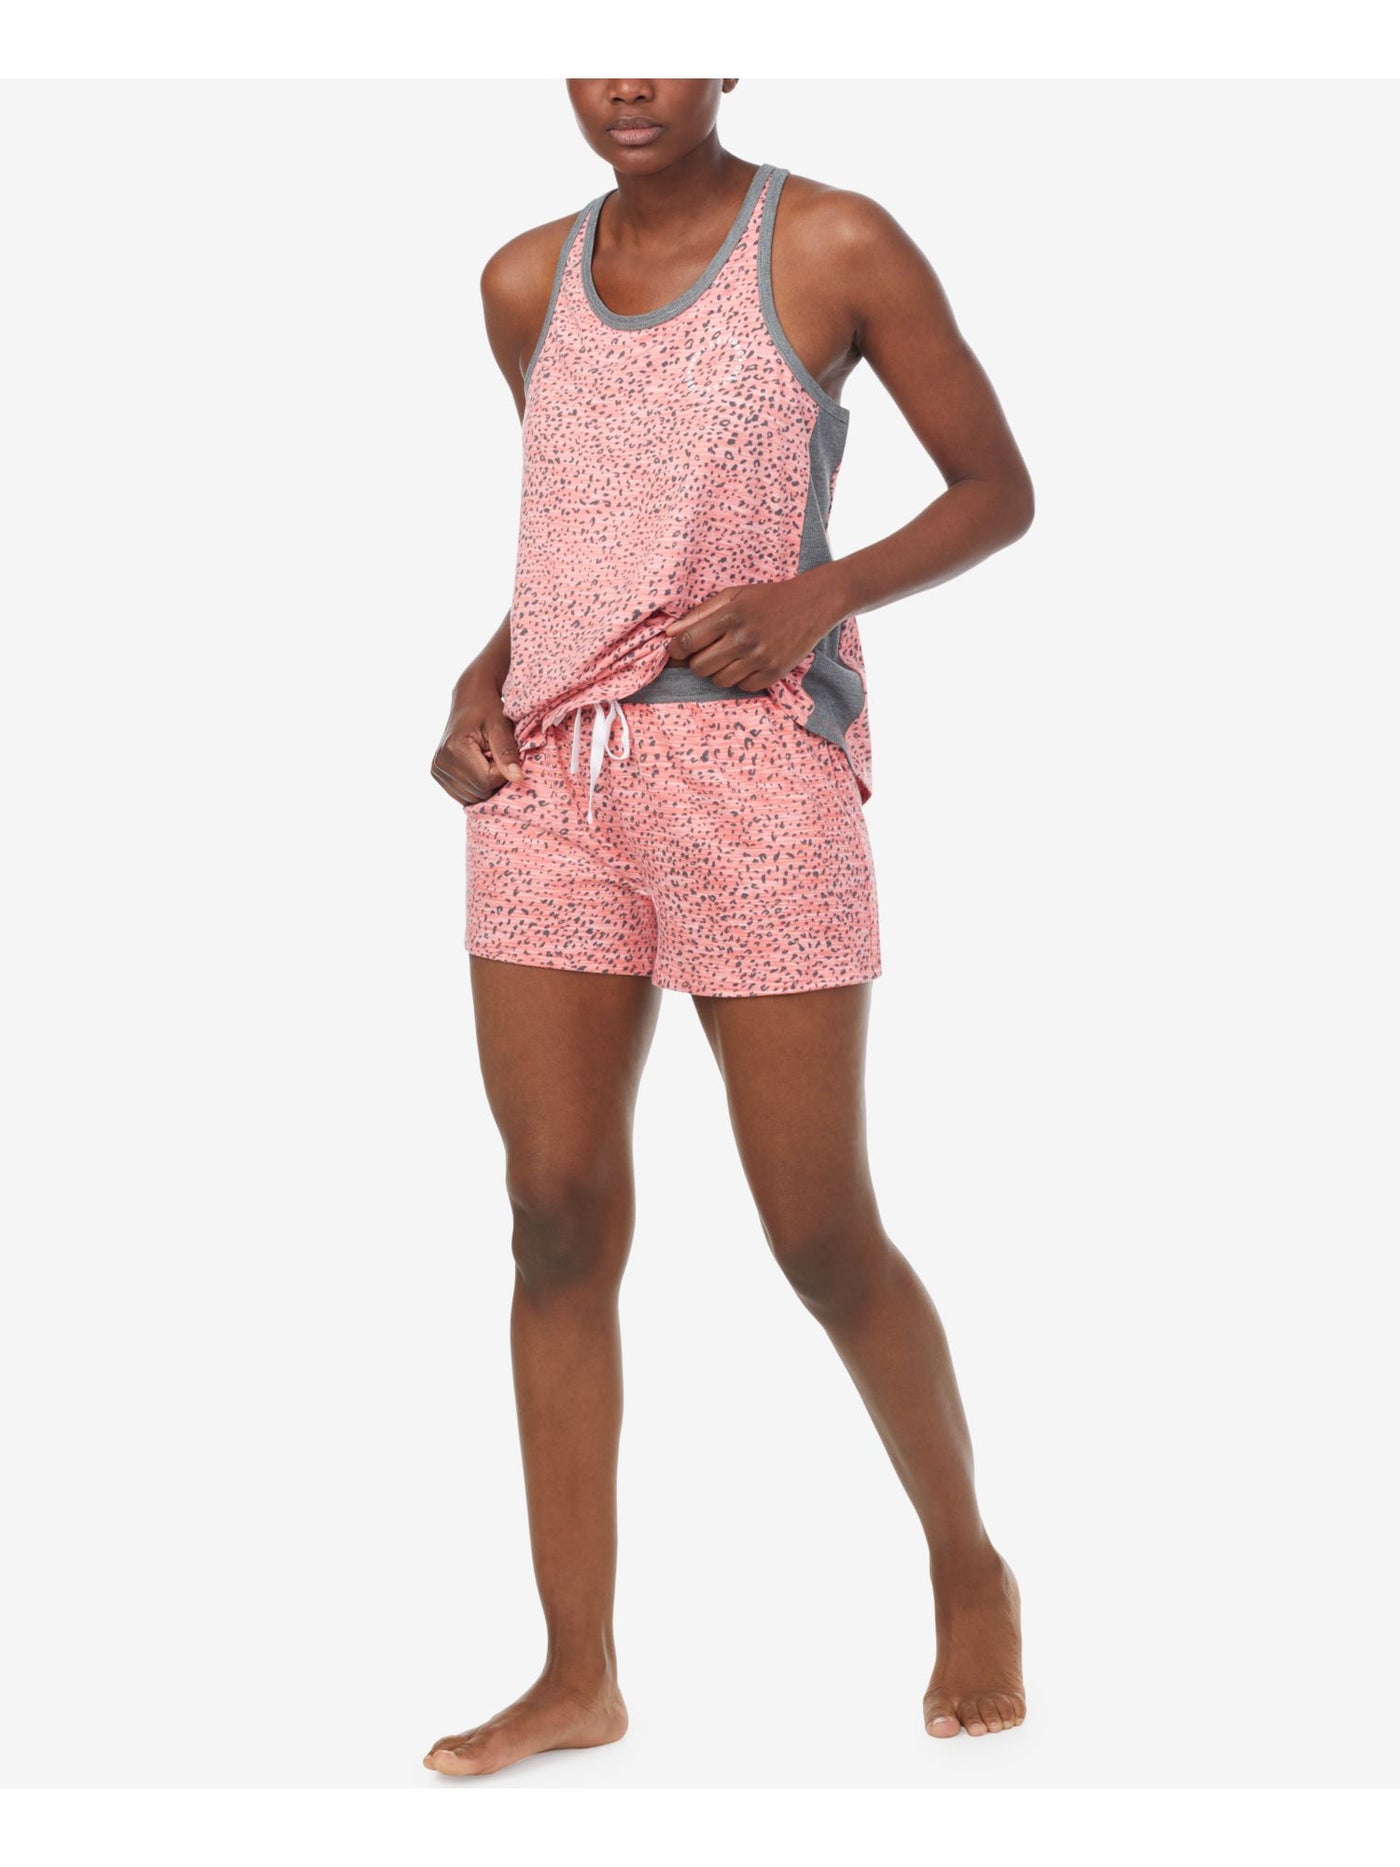 DKNY Womens Coral Logo Graphic Elastic Band Tank Top and Shorts Knit Pajamas XL